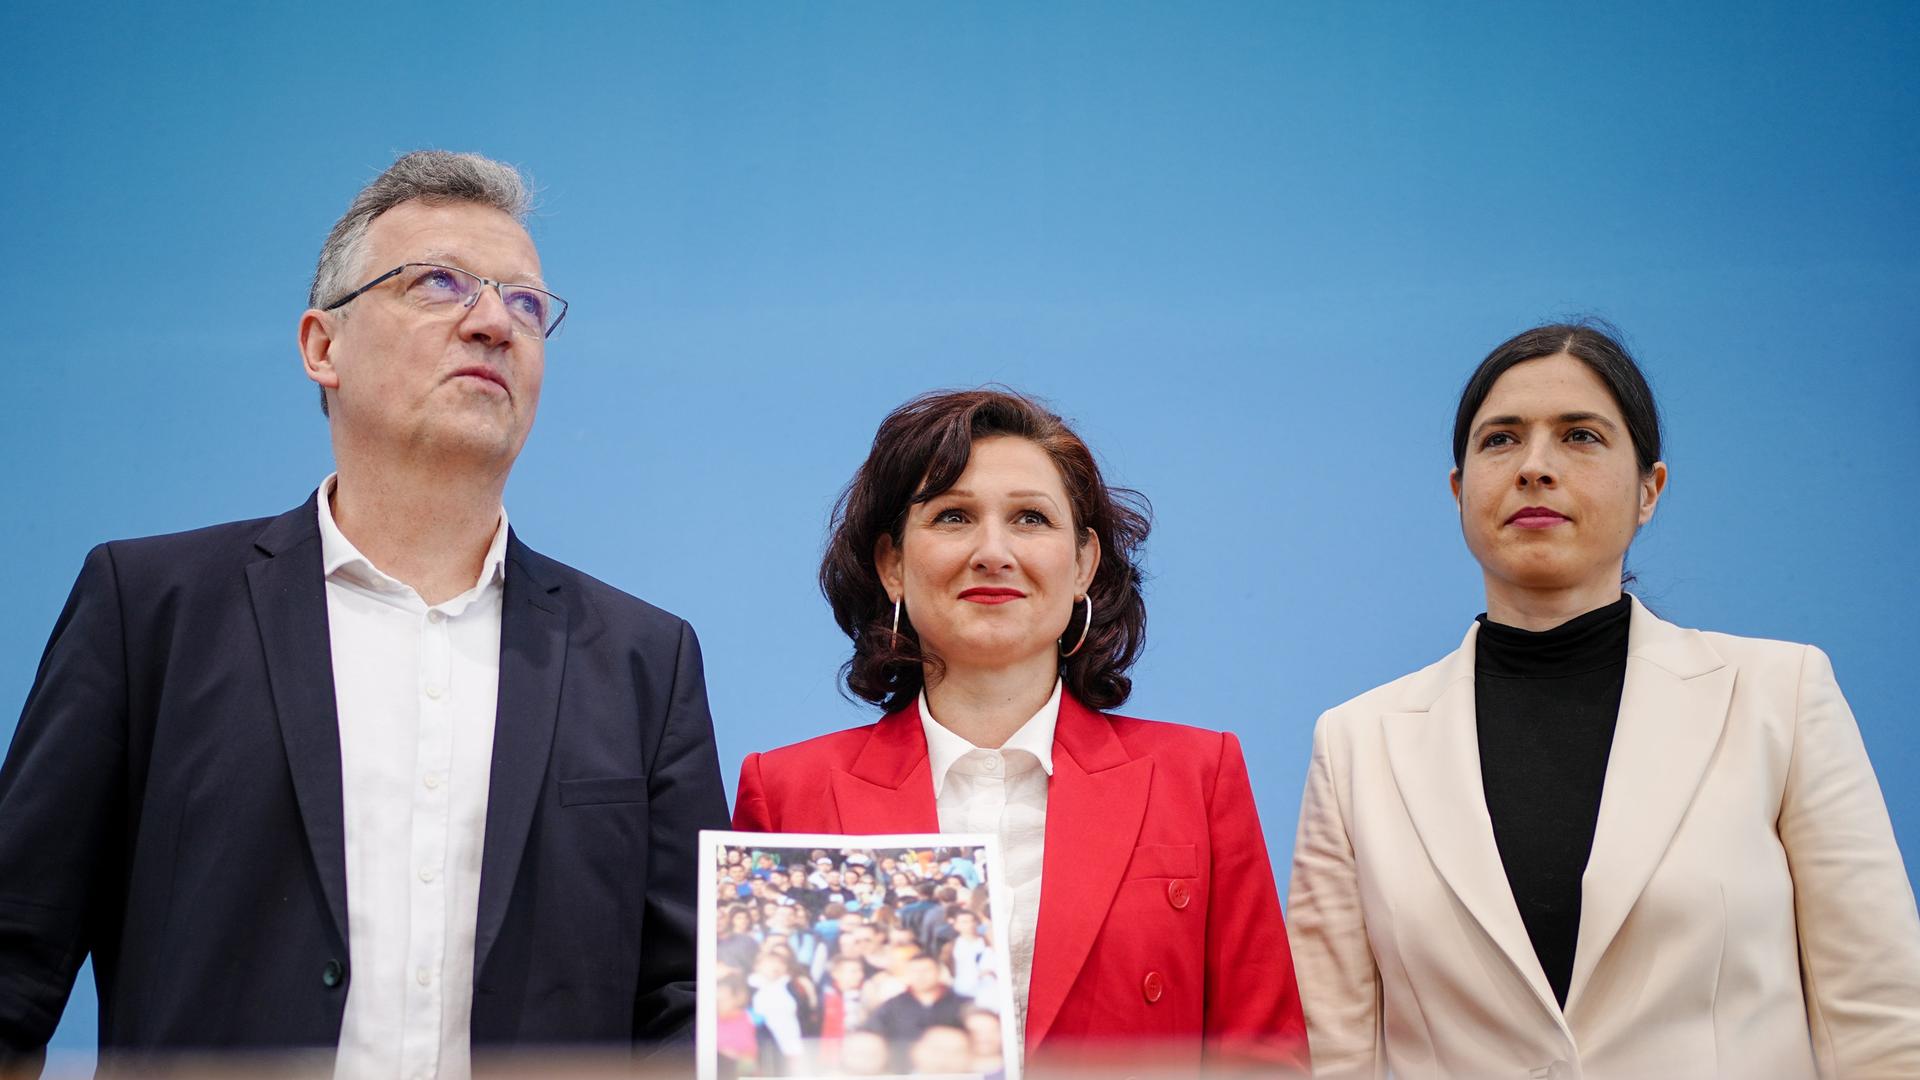 Ferda Ataman (M), steht bei der Bundespressekonferenz zwischen den Studienautoren Ulrike Wieland (r) und Ulrich Kober.